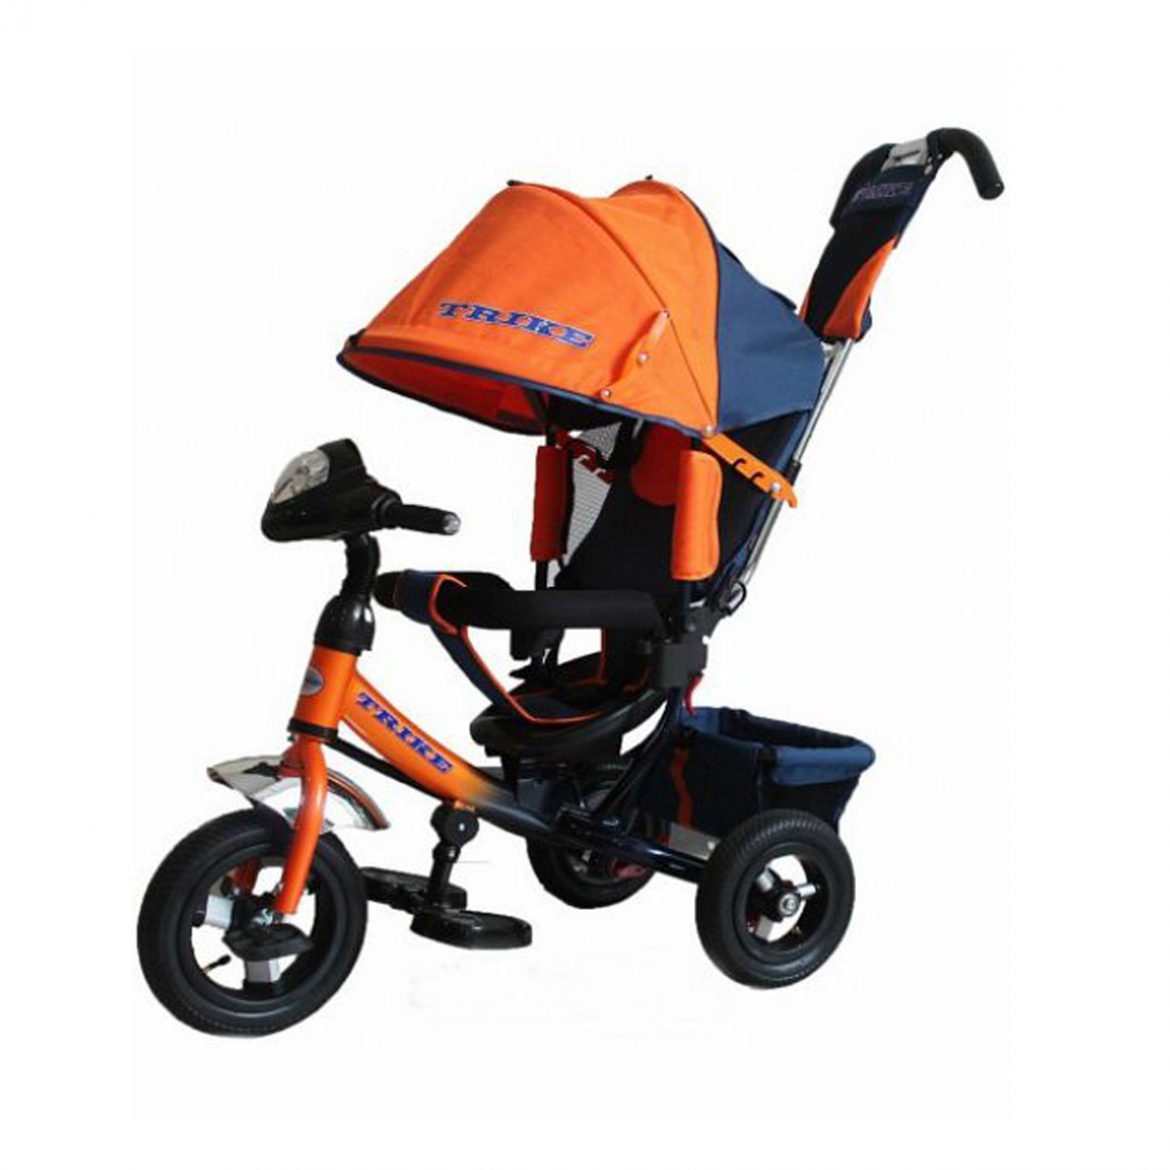 Велосипеды трехколесные с ручкой трайк. Trike tl3o. Велосипед капелла трехколесный с ручкой оранжевый. Kids Trike велосипед трехколесный оранжевый. Трехколесный велосипед Lexus Trike оранжевый.